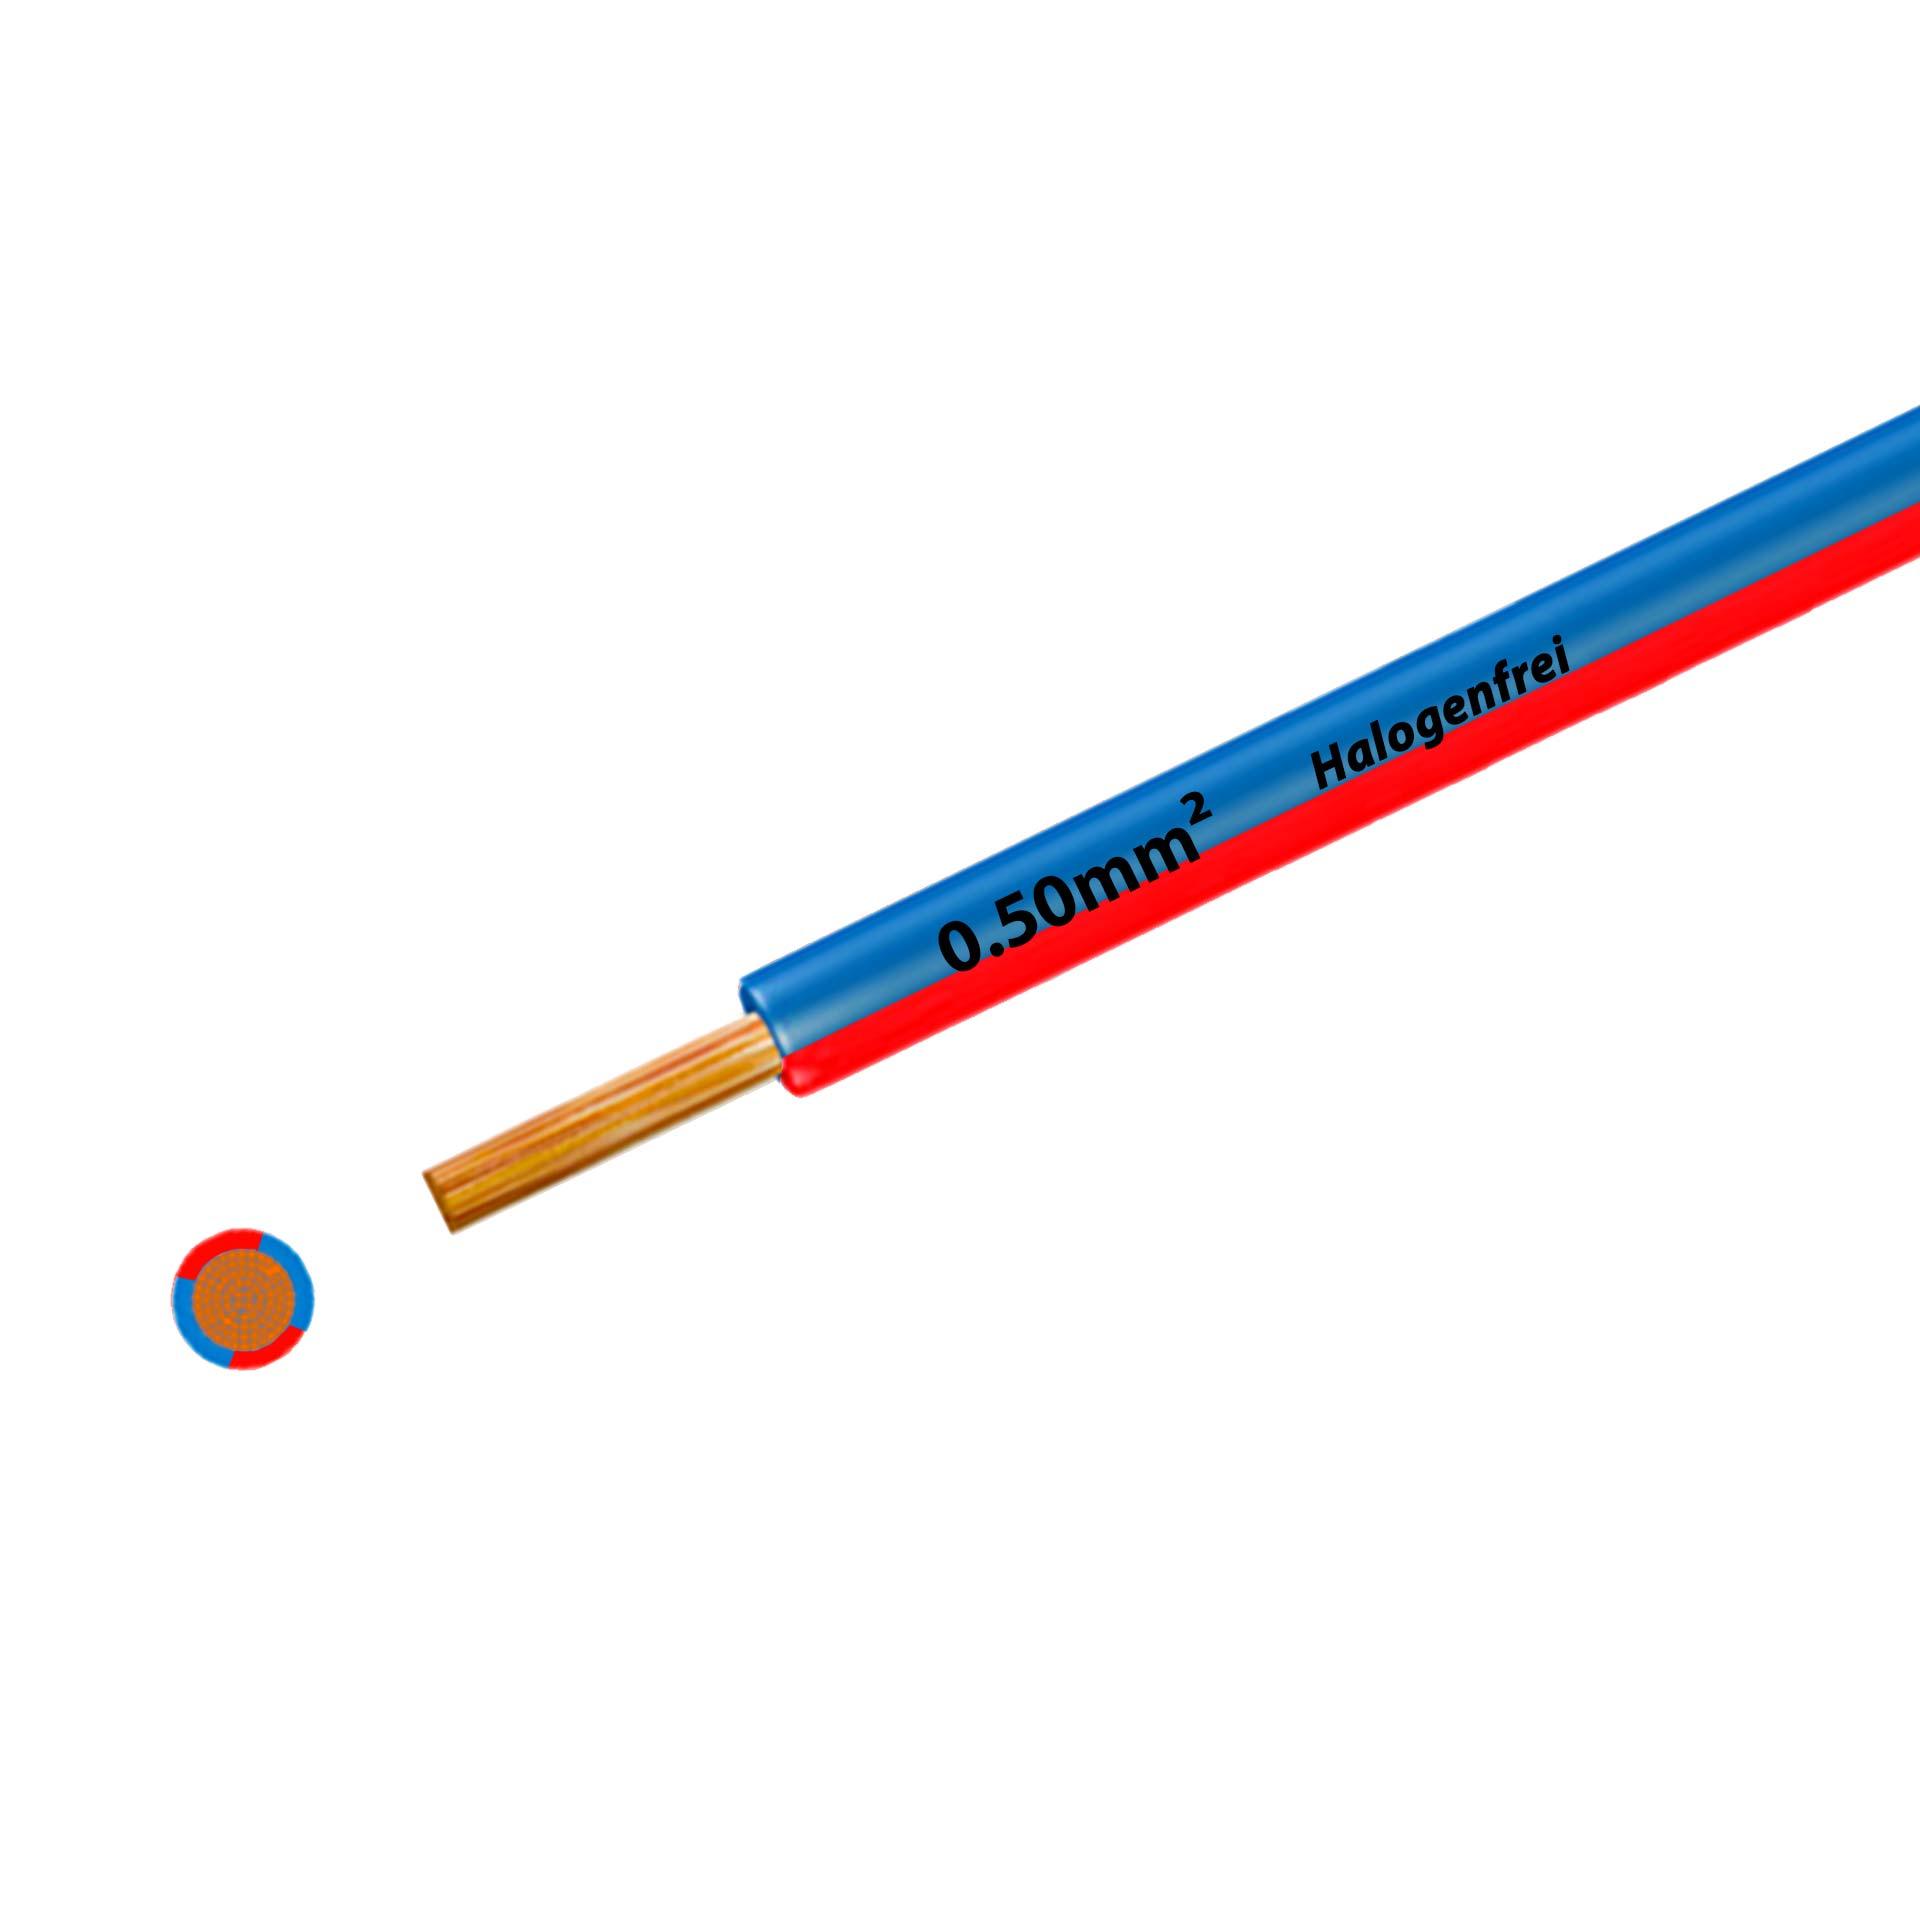 Litze halogenfrei 90° C , 500V, 0.50mm2, blau-rot (RAL 5012/3000), auf Kunststoffrolle